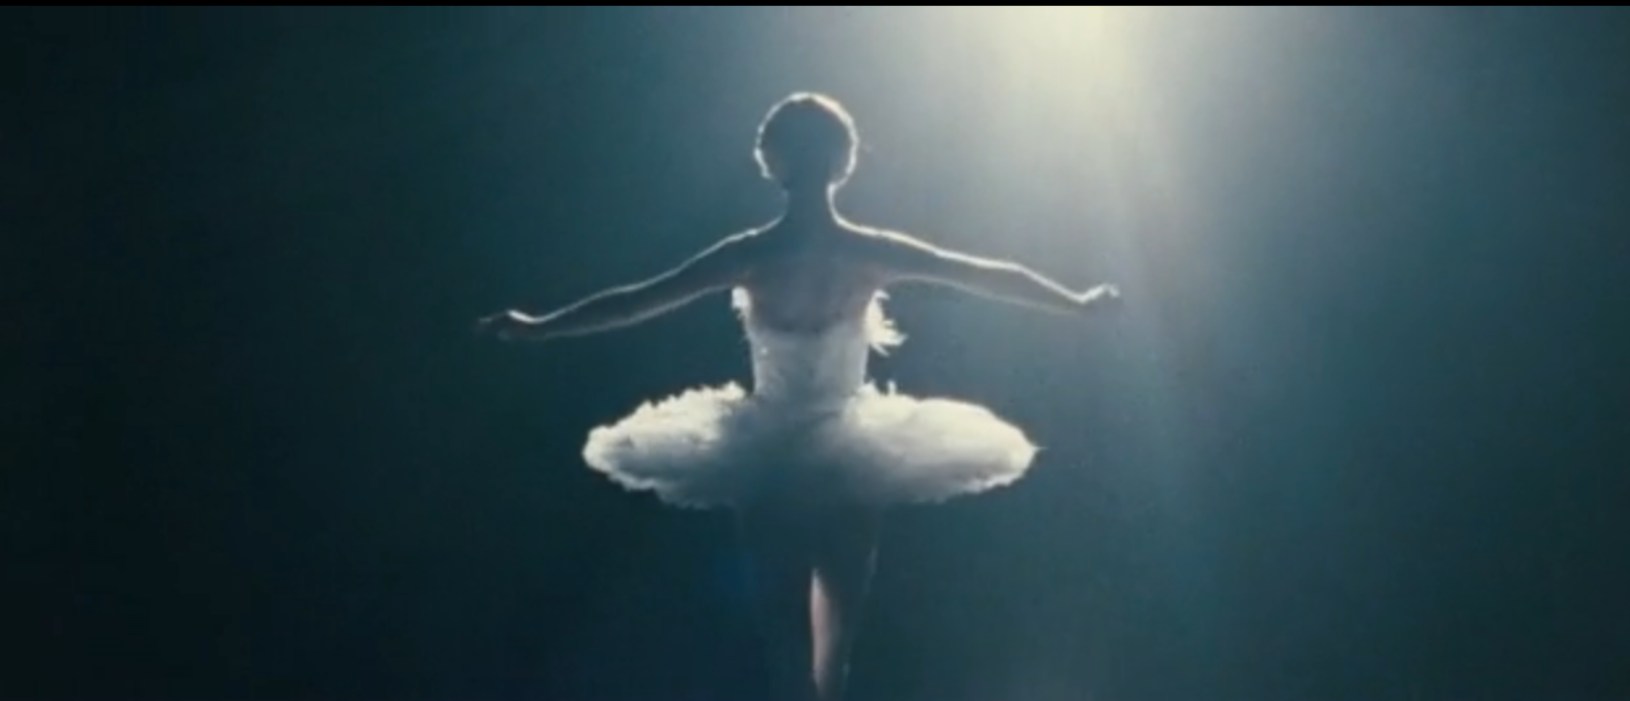 Black Swan är Darren Aronofskys senaste storfilm.